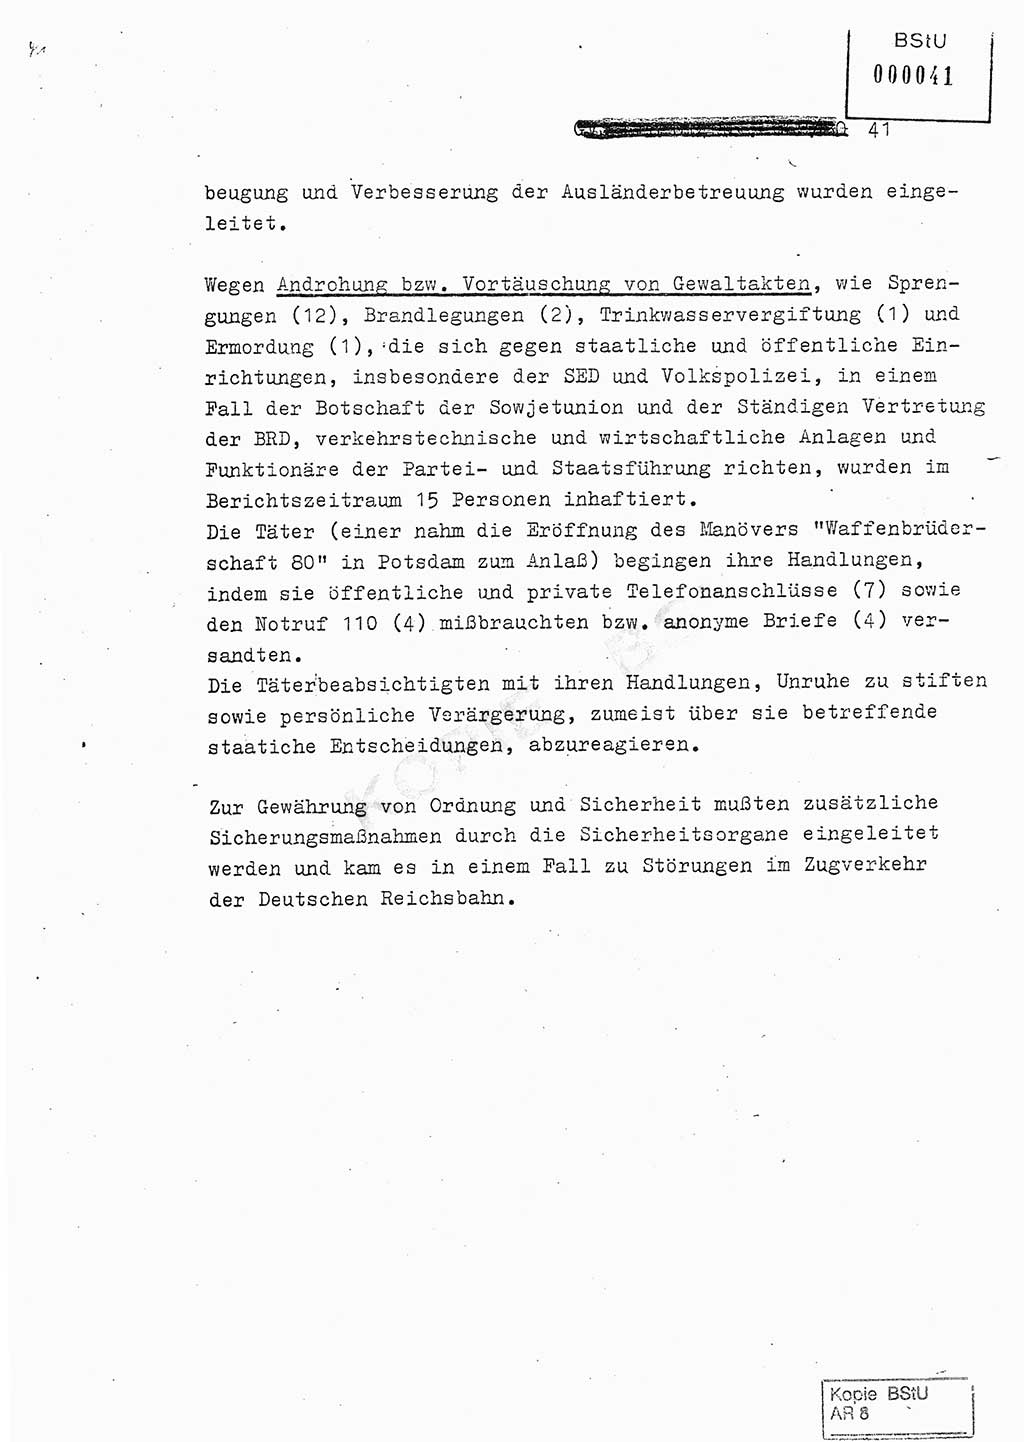 Jahresbericht der Hauptabteilung (HA) Ⅸ 1980, Analyse über die Entwicklung und die Wirksamkeit der politisch-operativen Arbeit der Linie Ⅸ in der Zeit vom 1. Januar 1980 bis 30. September 1980, Ministerium für Staatssicherheit (MfS) der Deutschen Demokratischen Republik (DDR), Hauptabteilung Ⅸ, Geheime Verschlußsache (GVS) 014-660/80, Berlin 1980, Seite 41 (Anal. MfS DDR HA Ⅸ GVS 014-660/80 1980, S. 41)